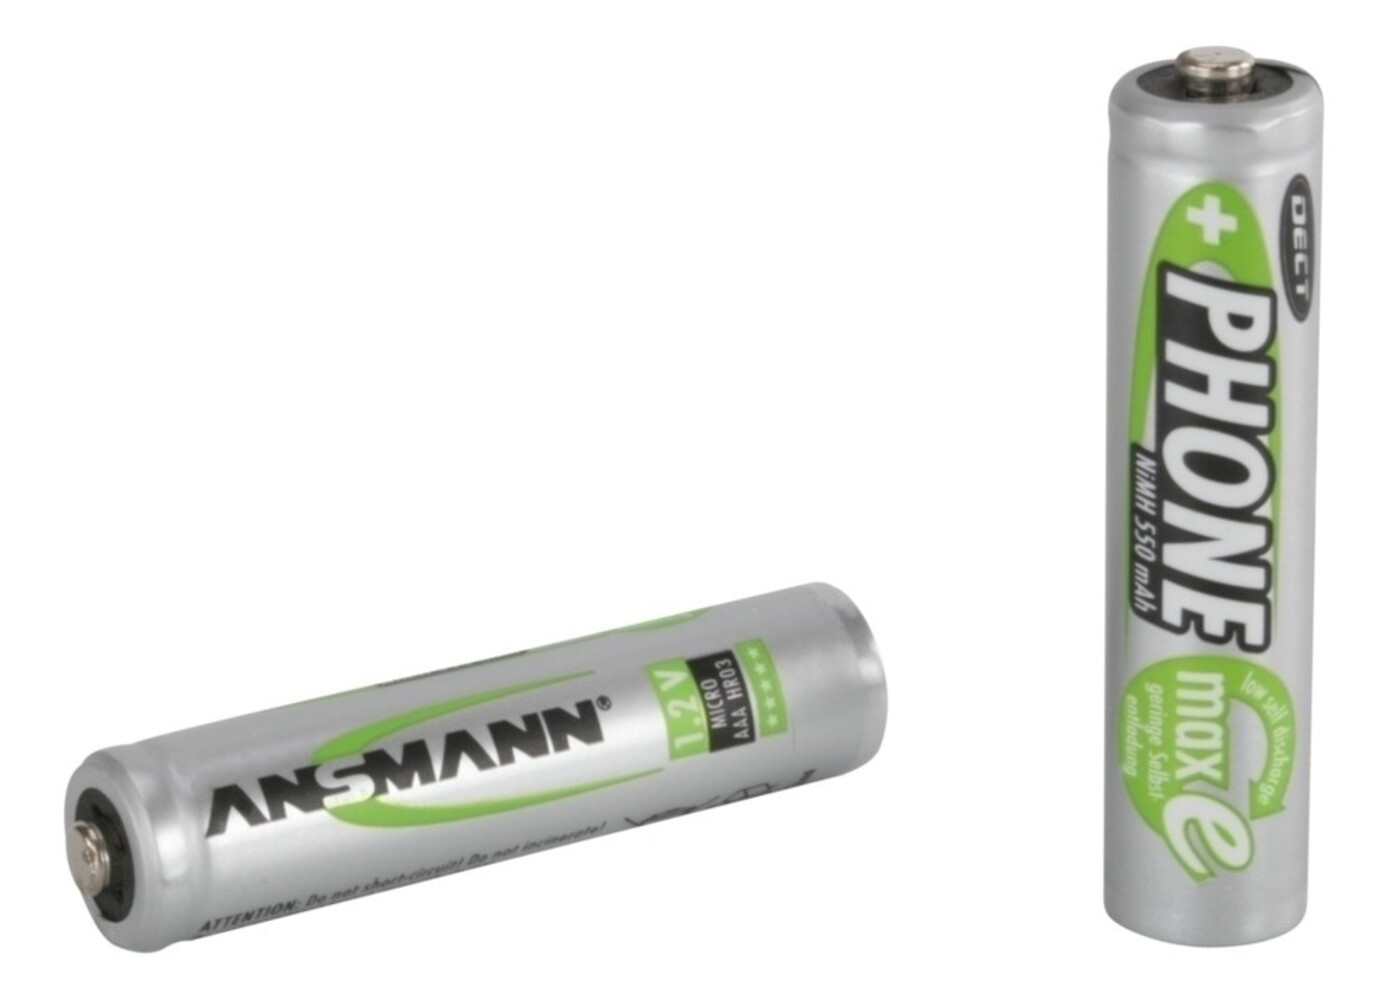 Ansmann AAA Batterien von Ansmann, zuverlässig und langlebig